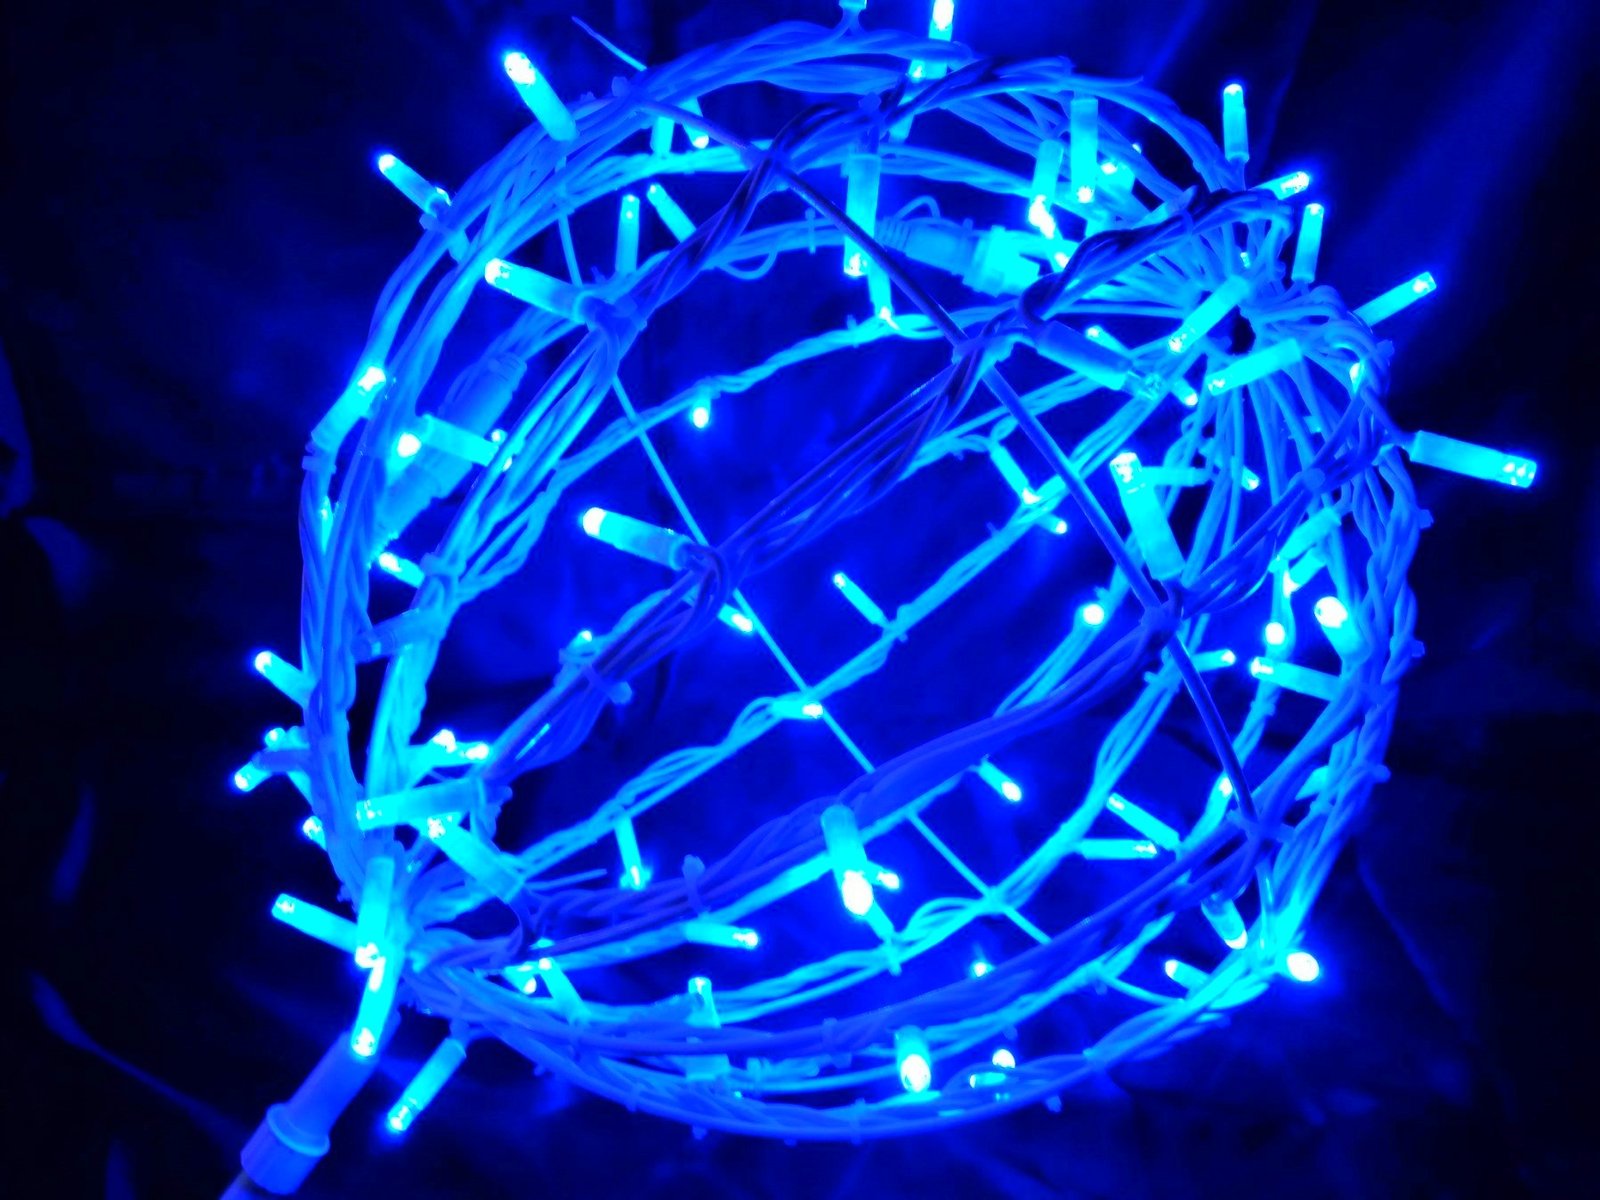 светящийся шар новогодний Мелитополь, пунить светящийся шар на новый год Мелитополь, где в Мелитополе купить гирлянды на улицу, как повесить гирлянды на растения